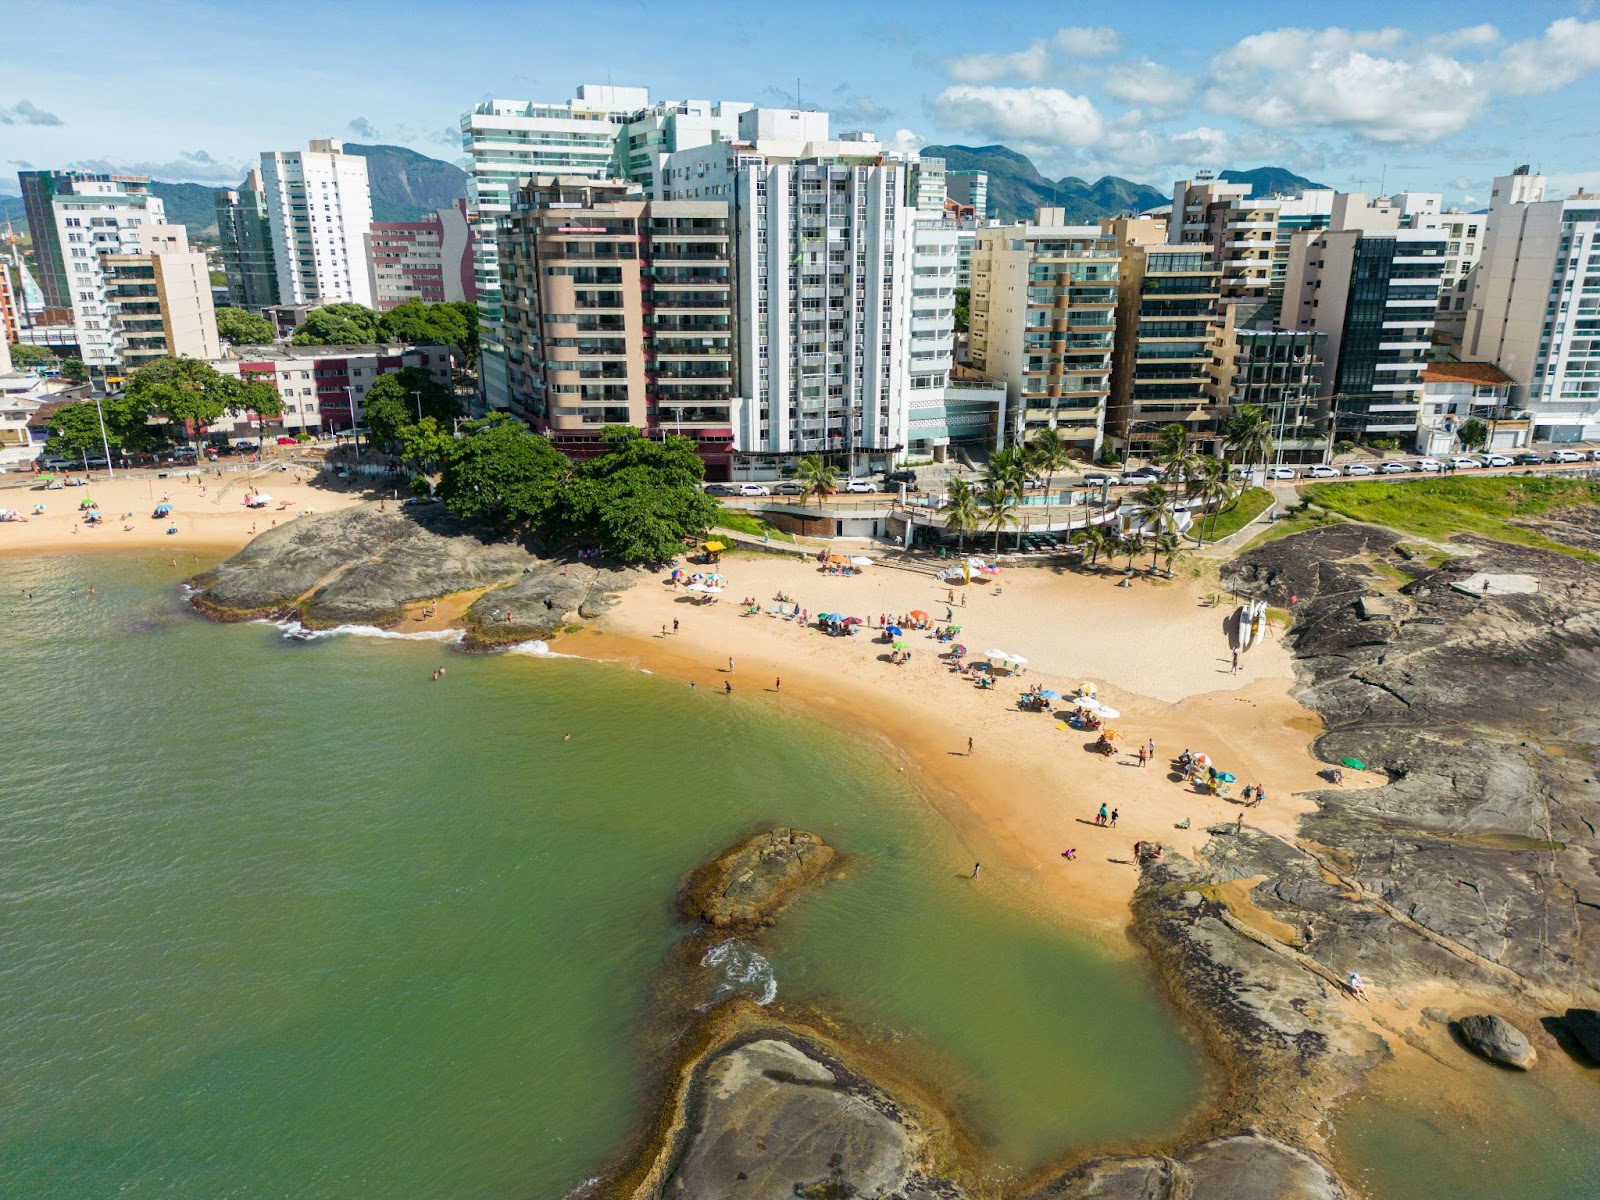 Vista aérea da Praia dos Namorados. Pequena faixa de areia entre rochas, com prédios da cidade de diferentes tamanhos atrás.